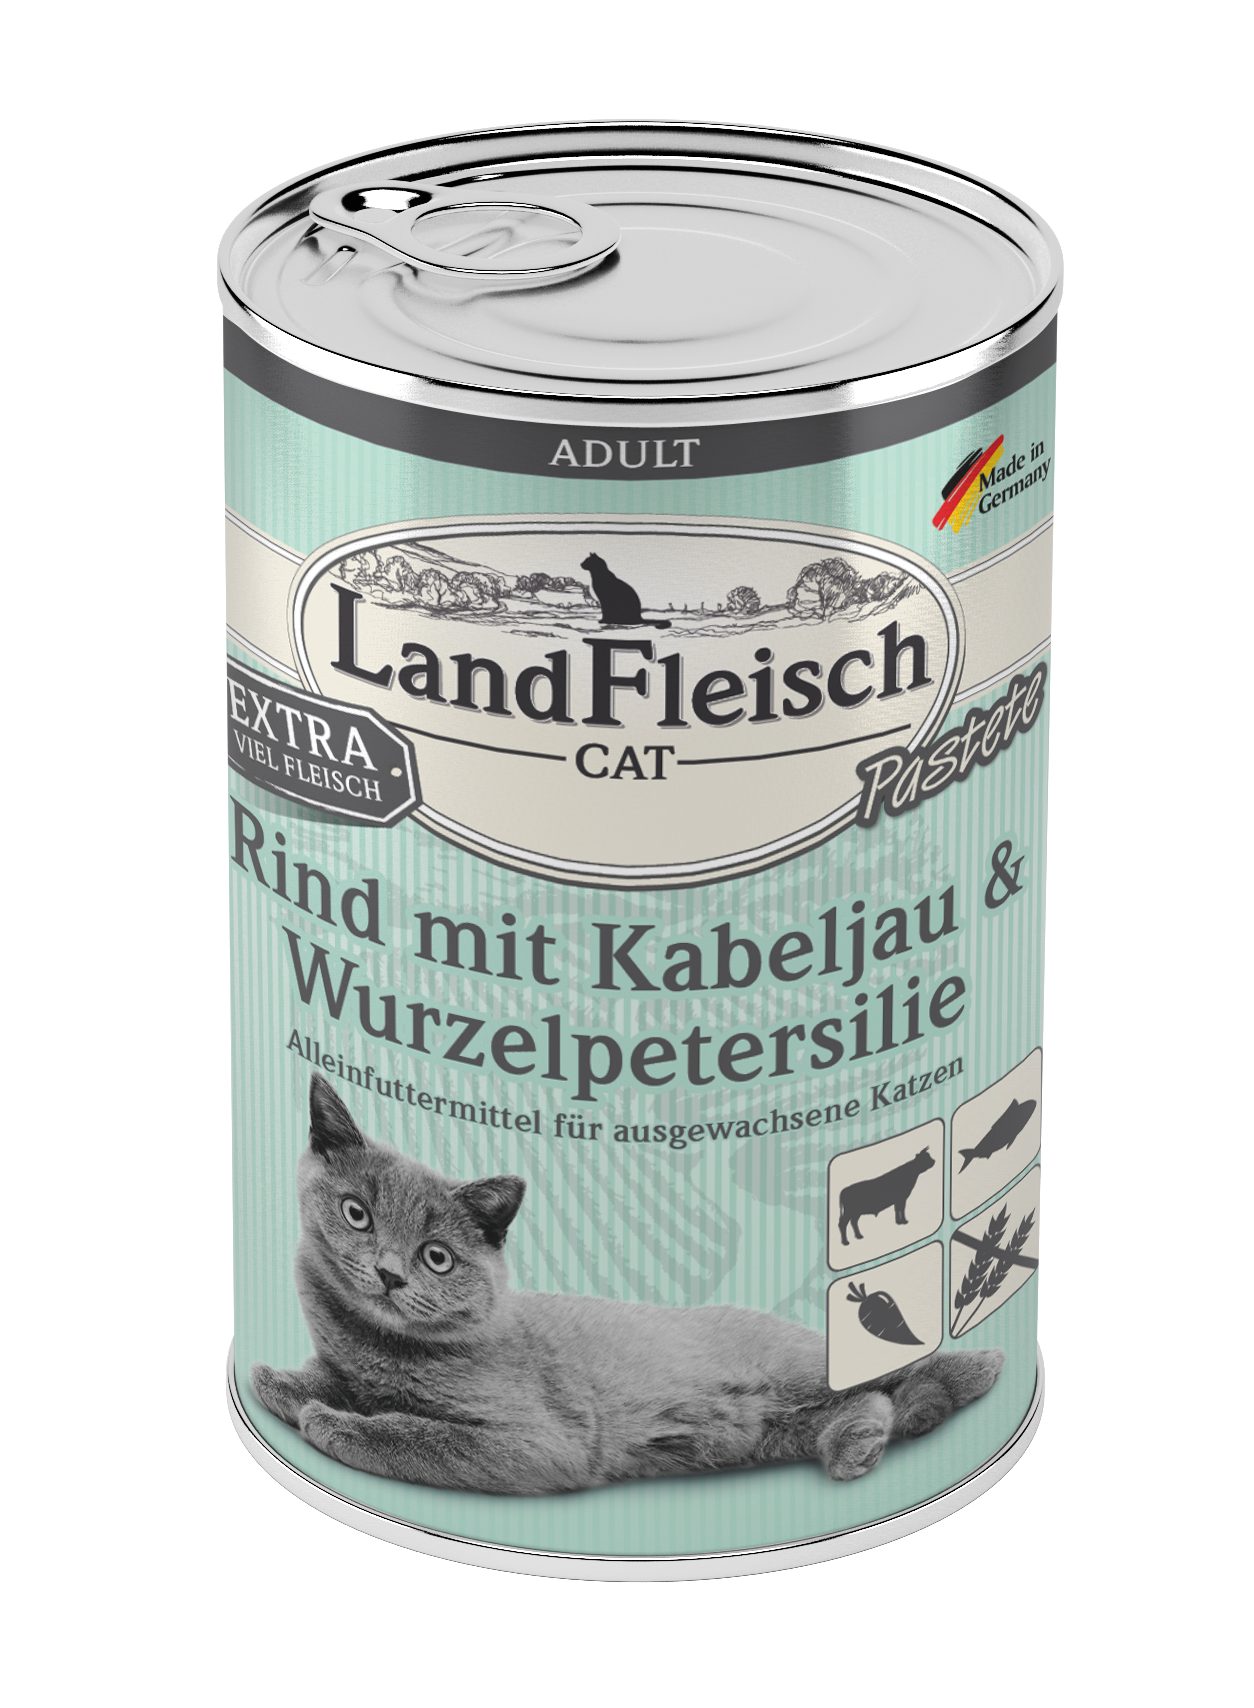 LandFleisch Cat Adult Pastete mit Rind mit Kabeljau & Wurzelpetersilie 400g